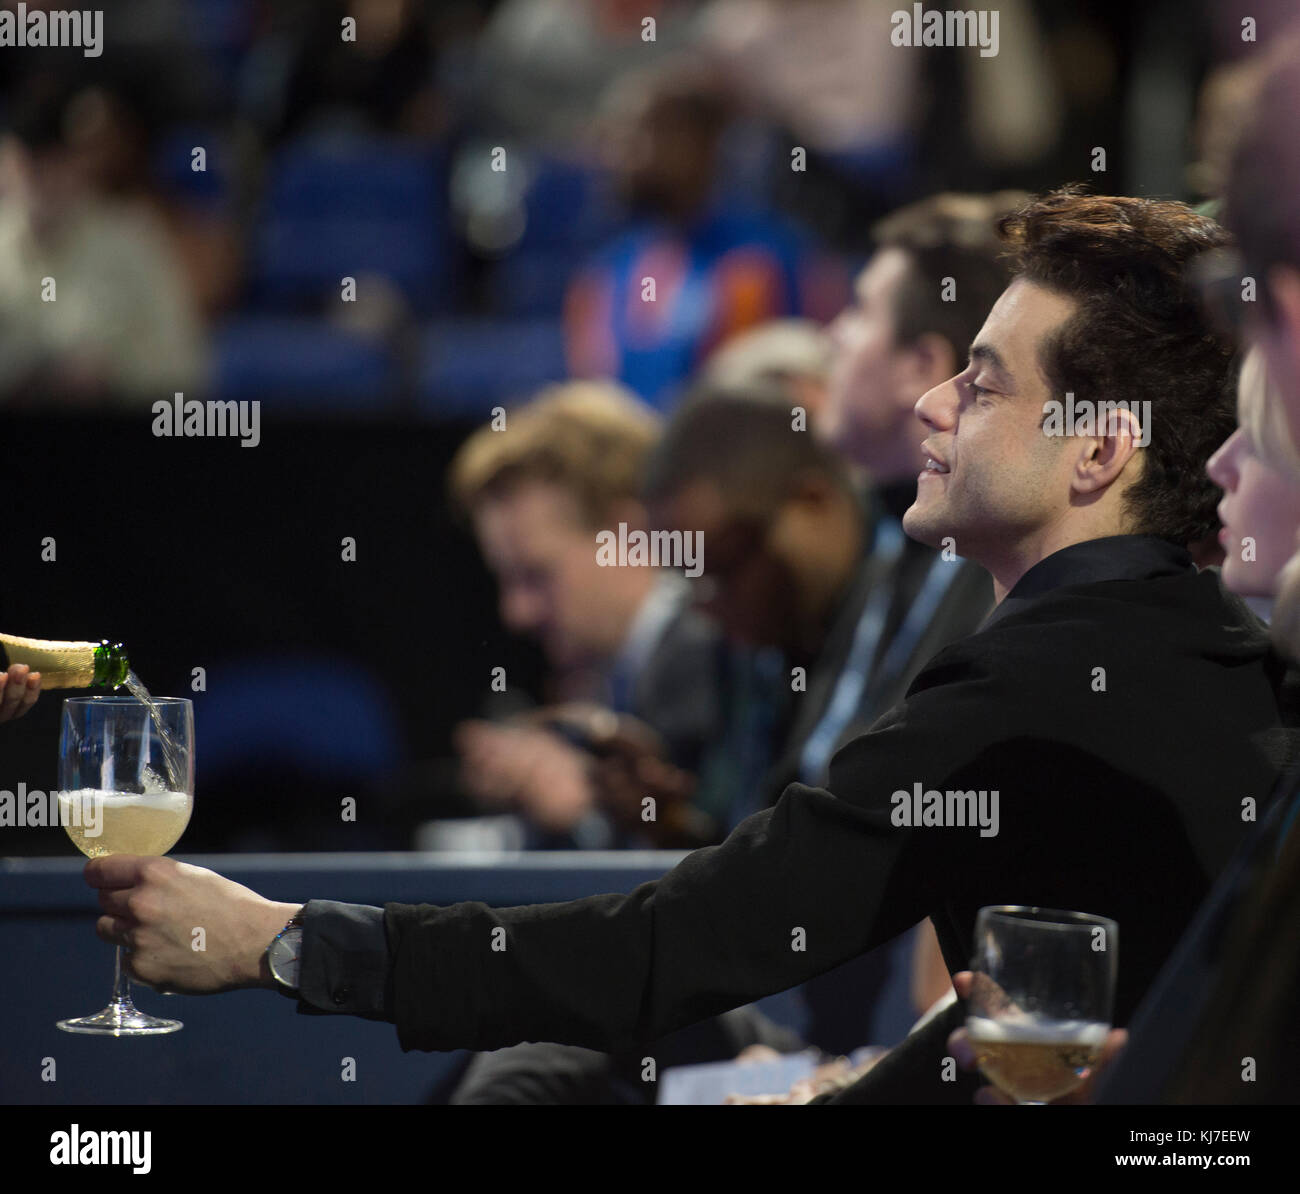 19 novembre 2017. L'acteur AMÉRICAIN Rami Malek regarde les finales de tennis de Nitto ATP de la boîte d'étoiles du tribunal à l'O2. Crédit: Malcolm Park/Alay Banque D'Images